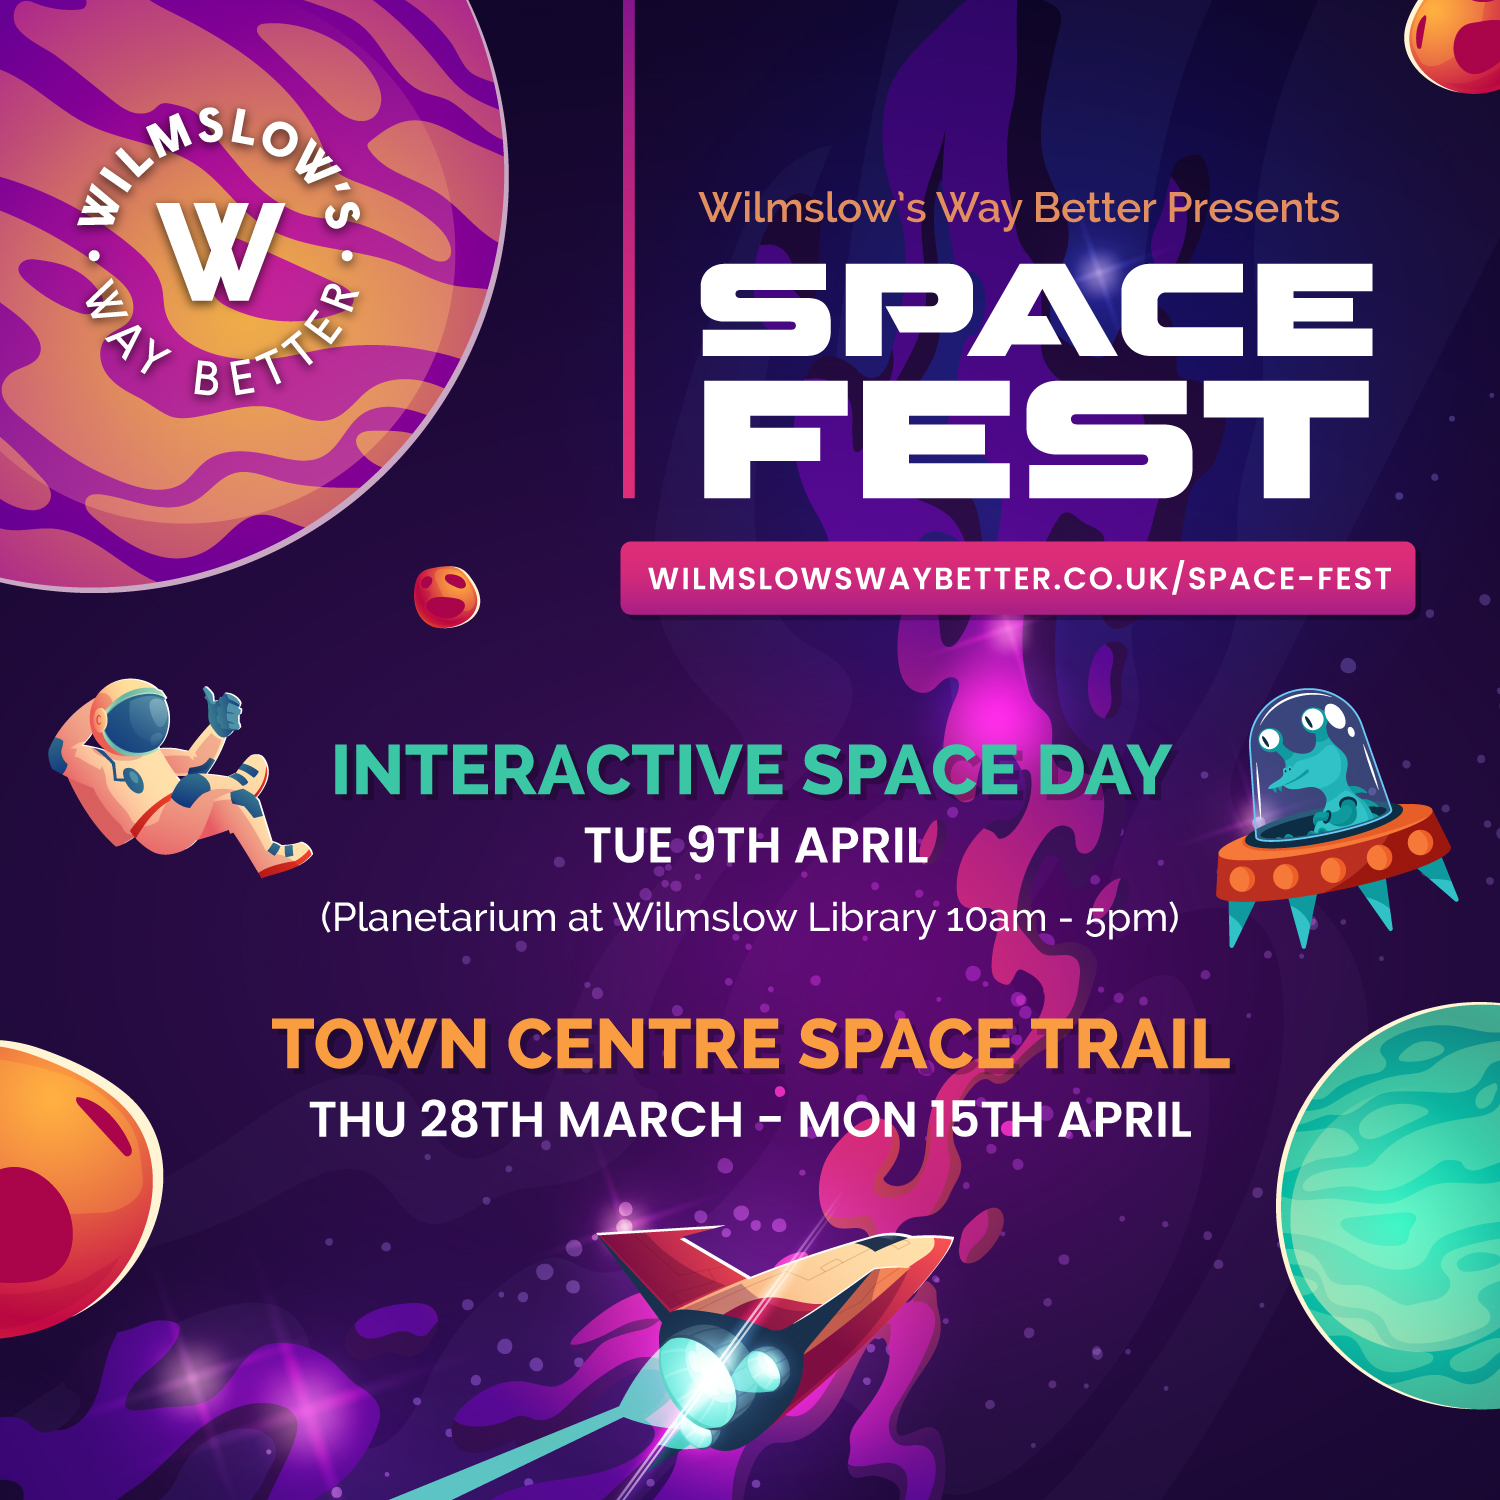 Space Fest Town Centre Trail